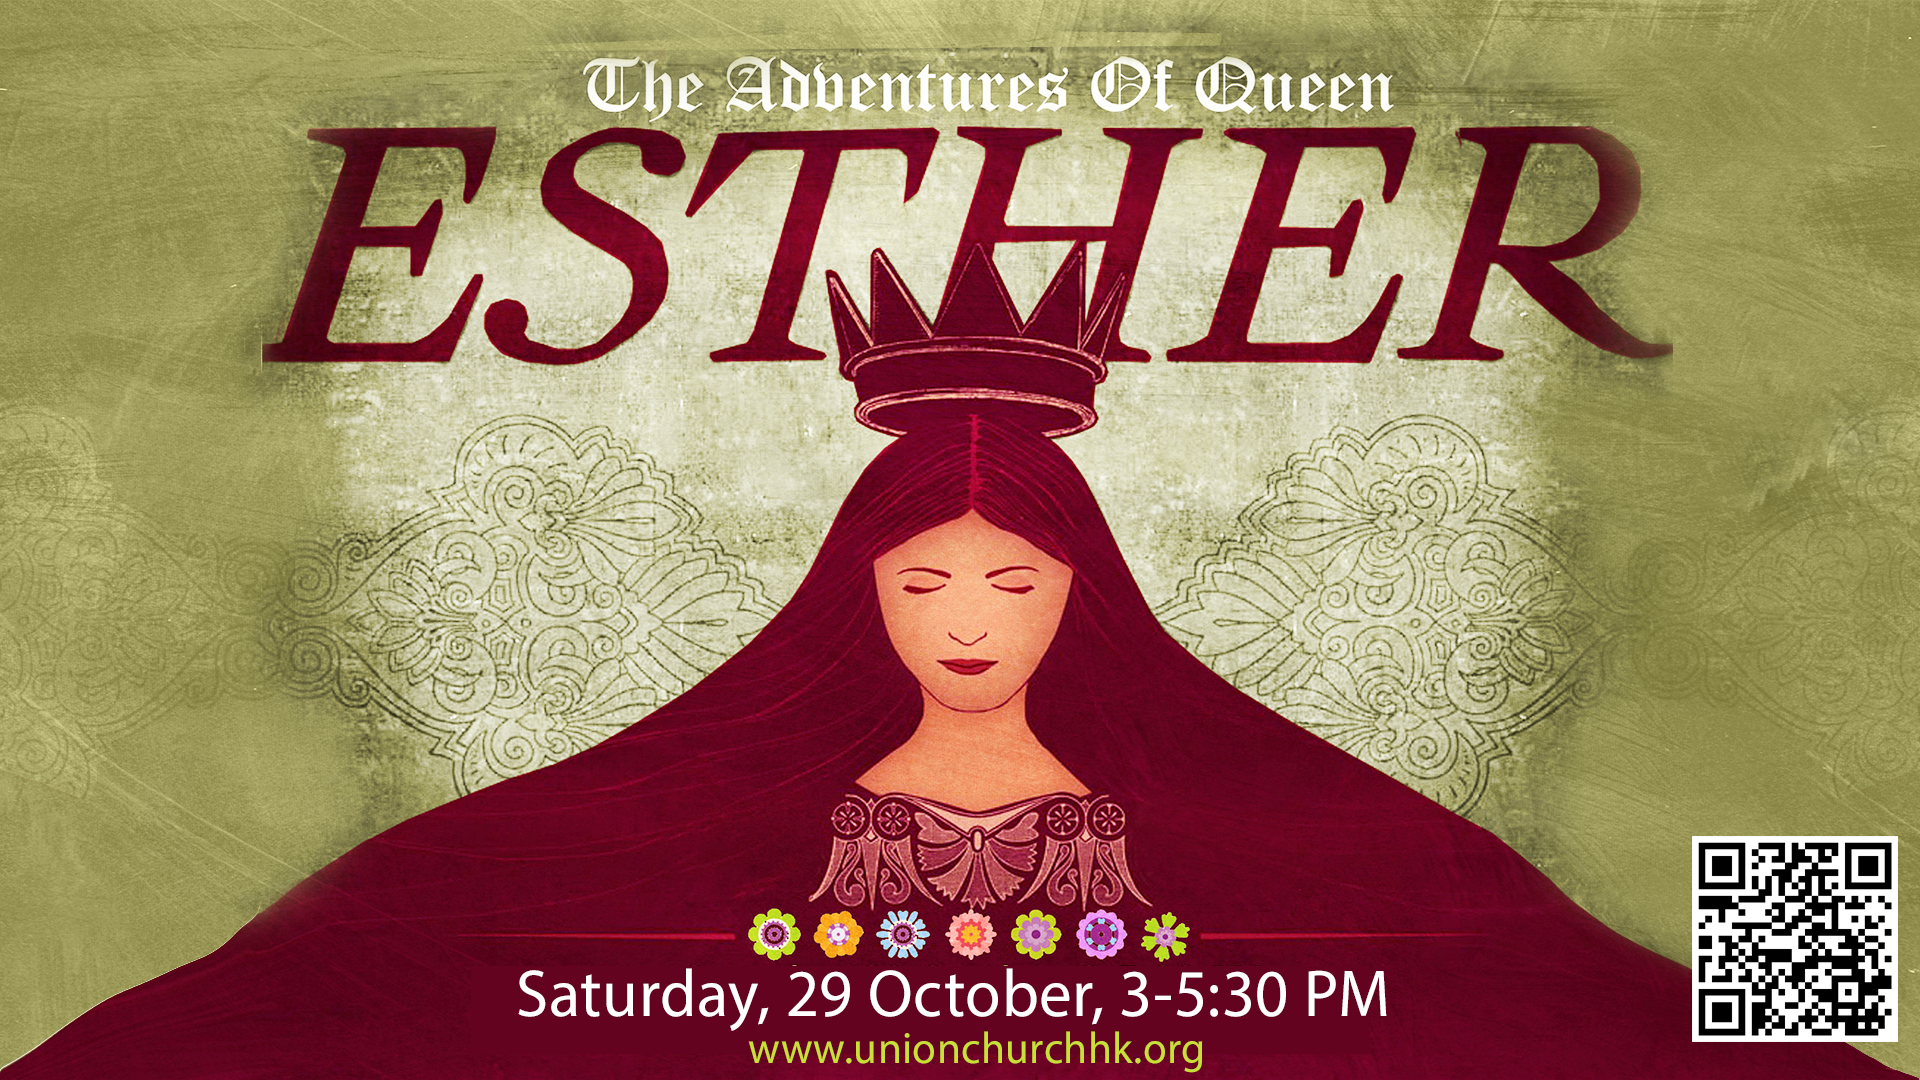 Hallelujah Party - The Adventures of Queen Esther